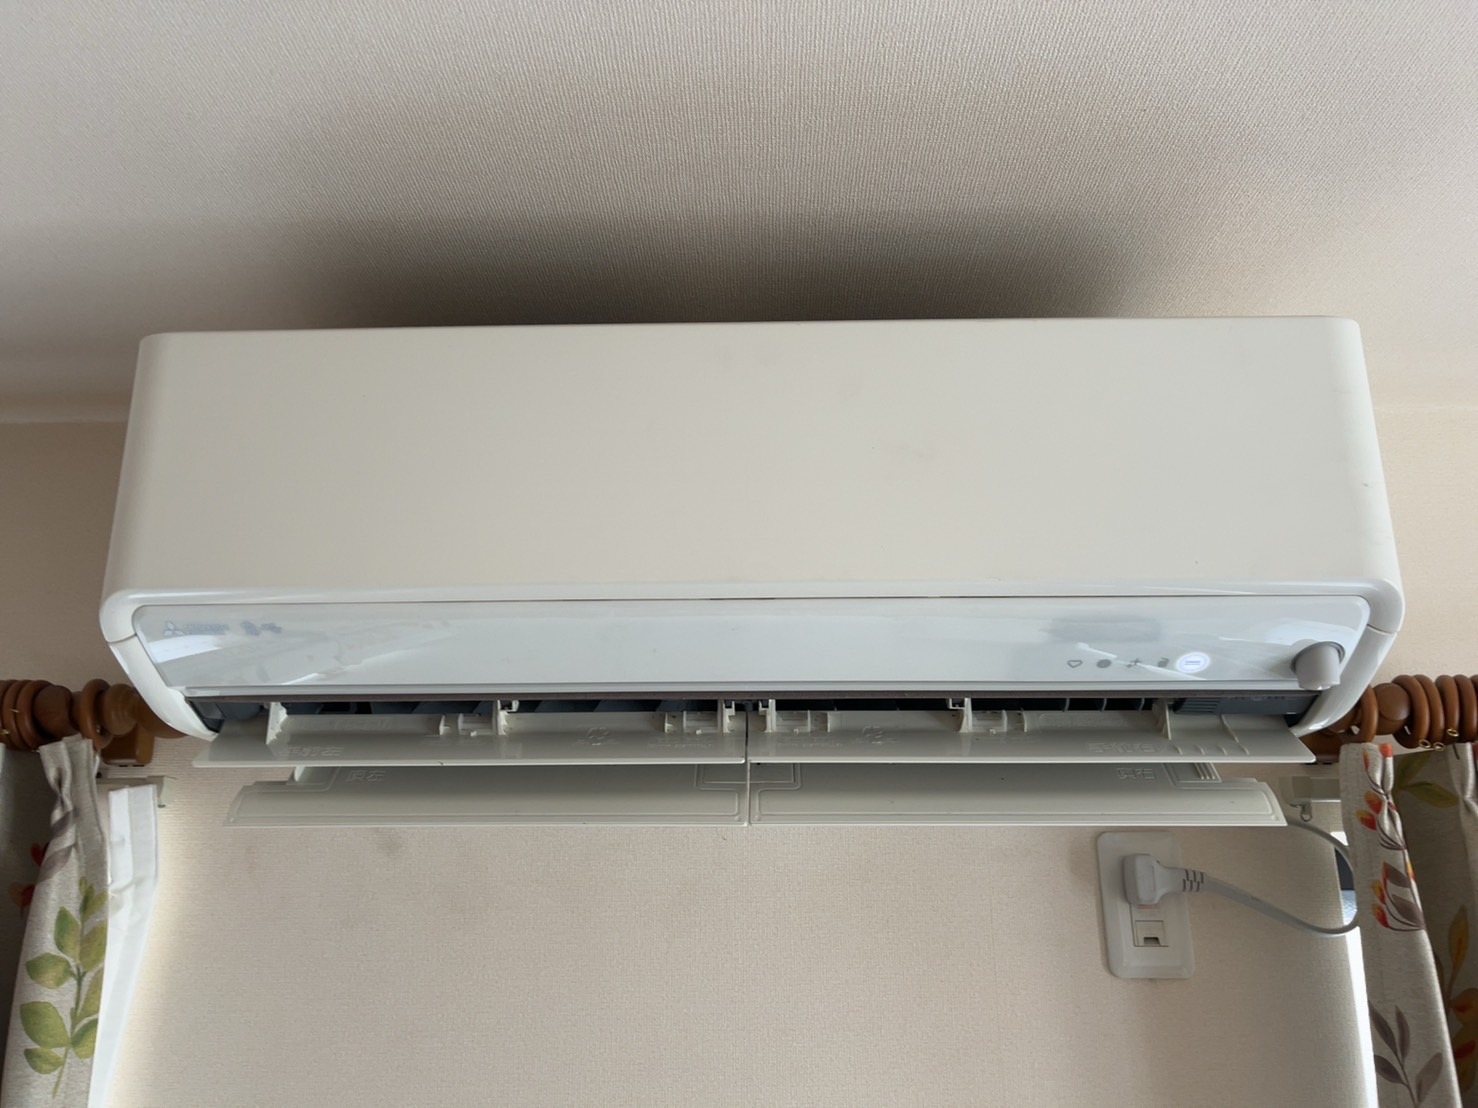 MSZ-Z5617S-Wのエアコンクリーニングは草加市のJETホームサービスにおまかせください